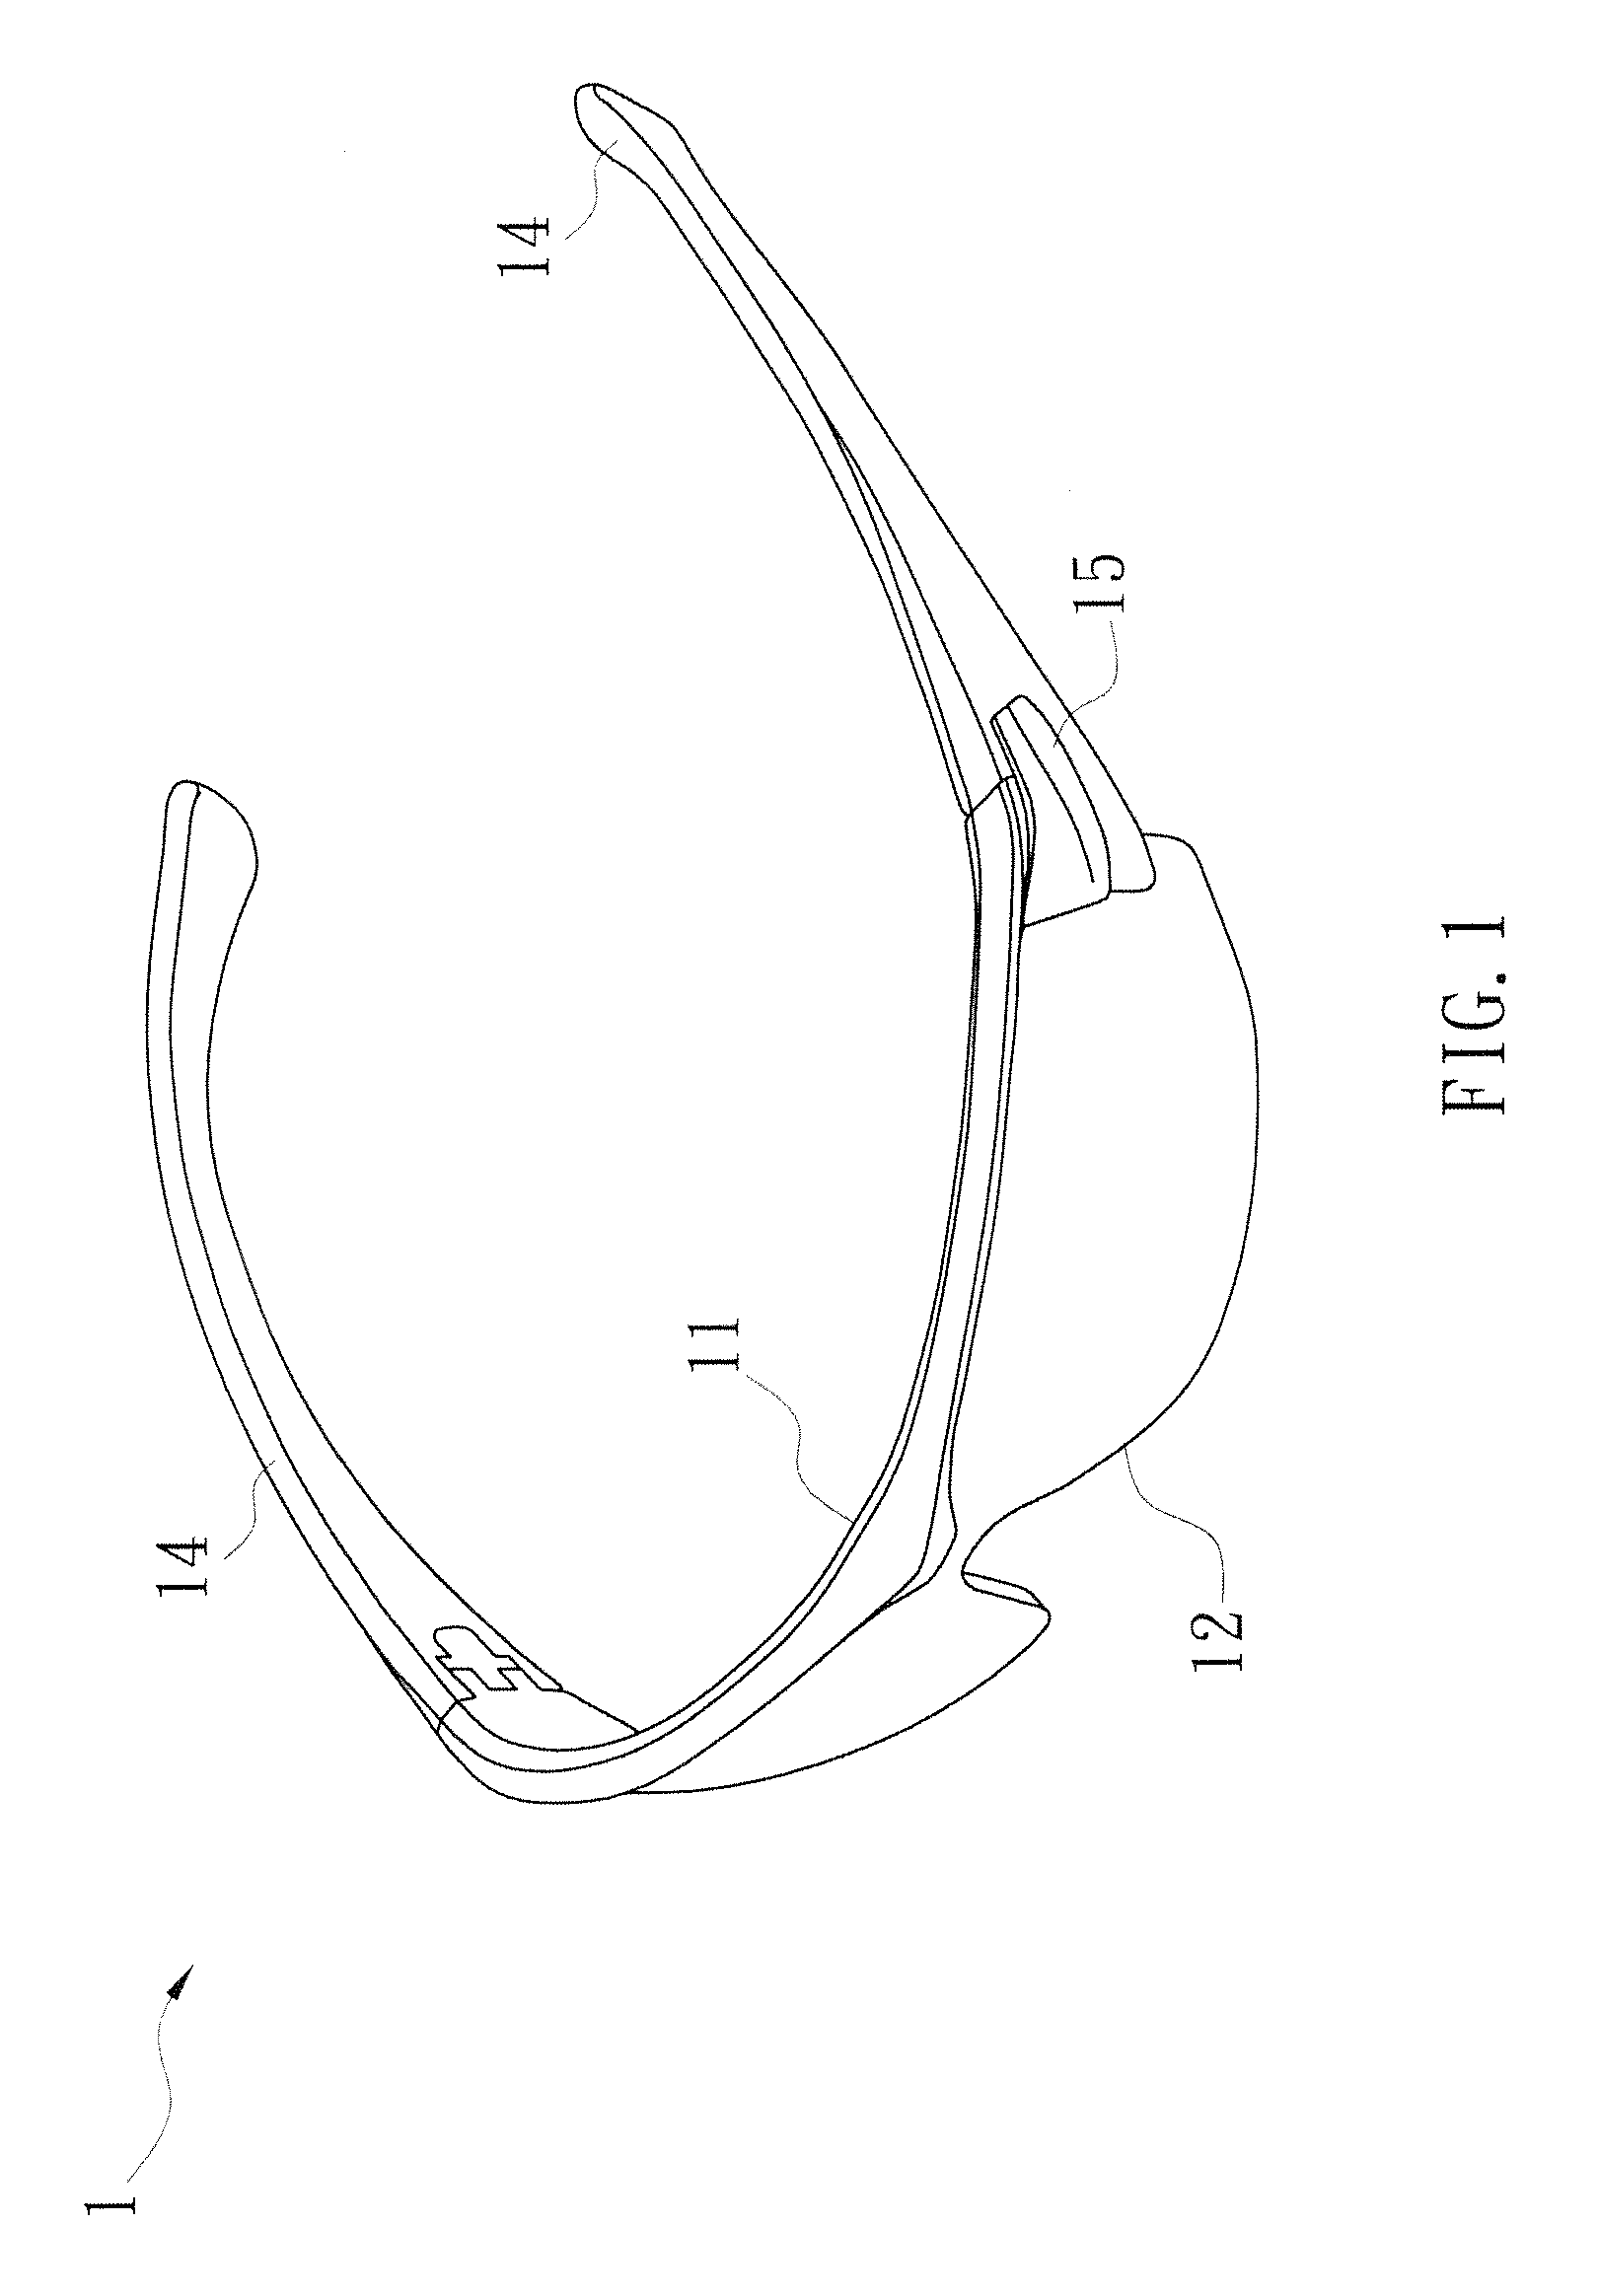 Eye-lens device